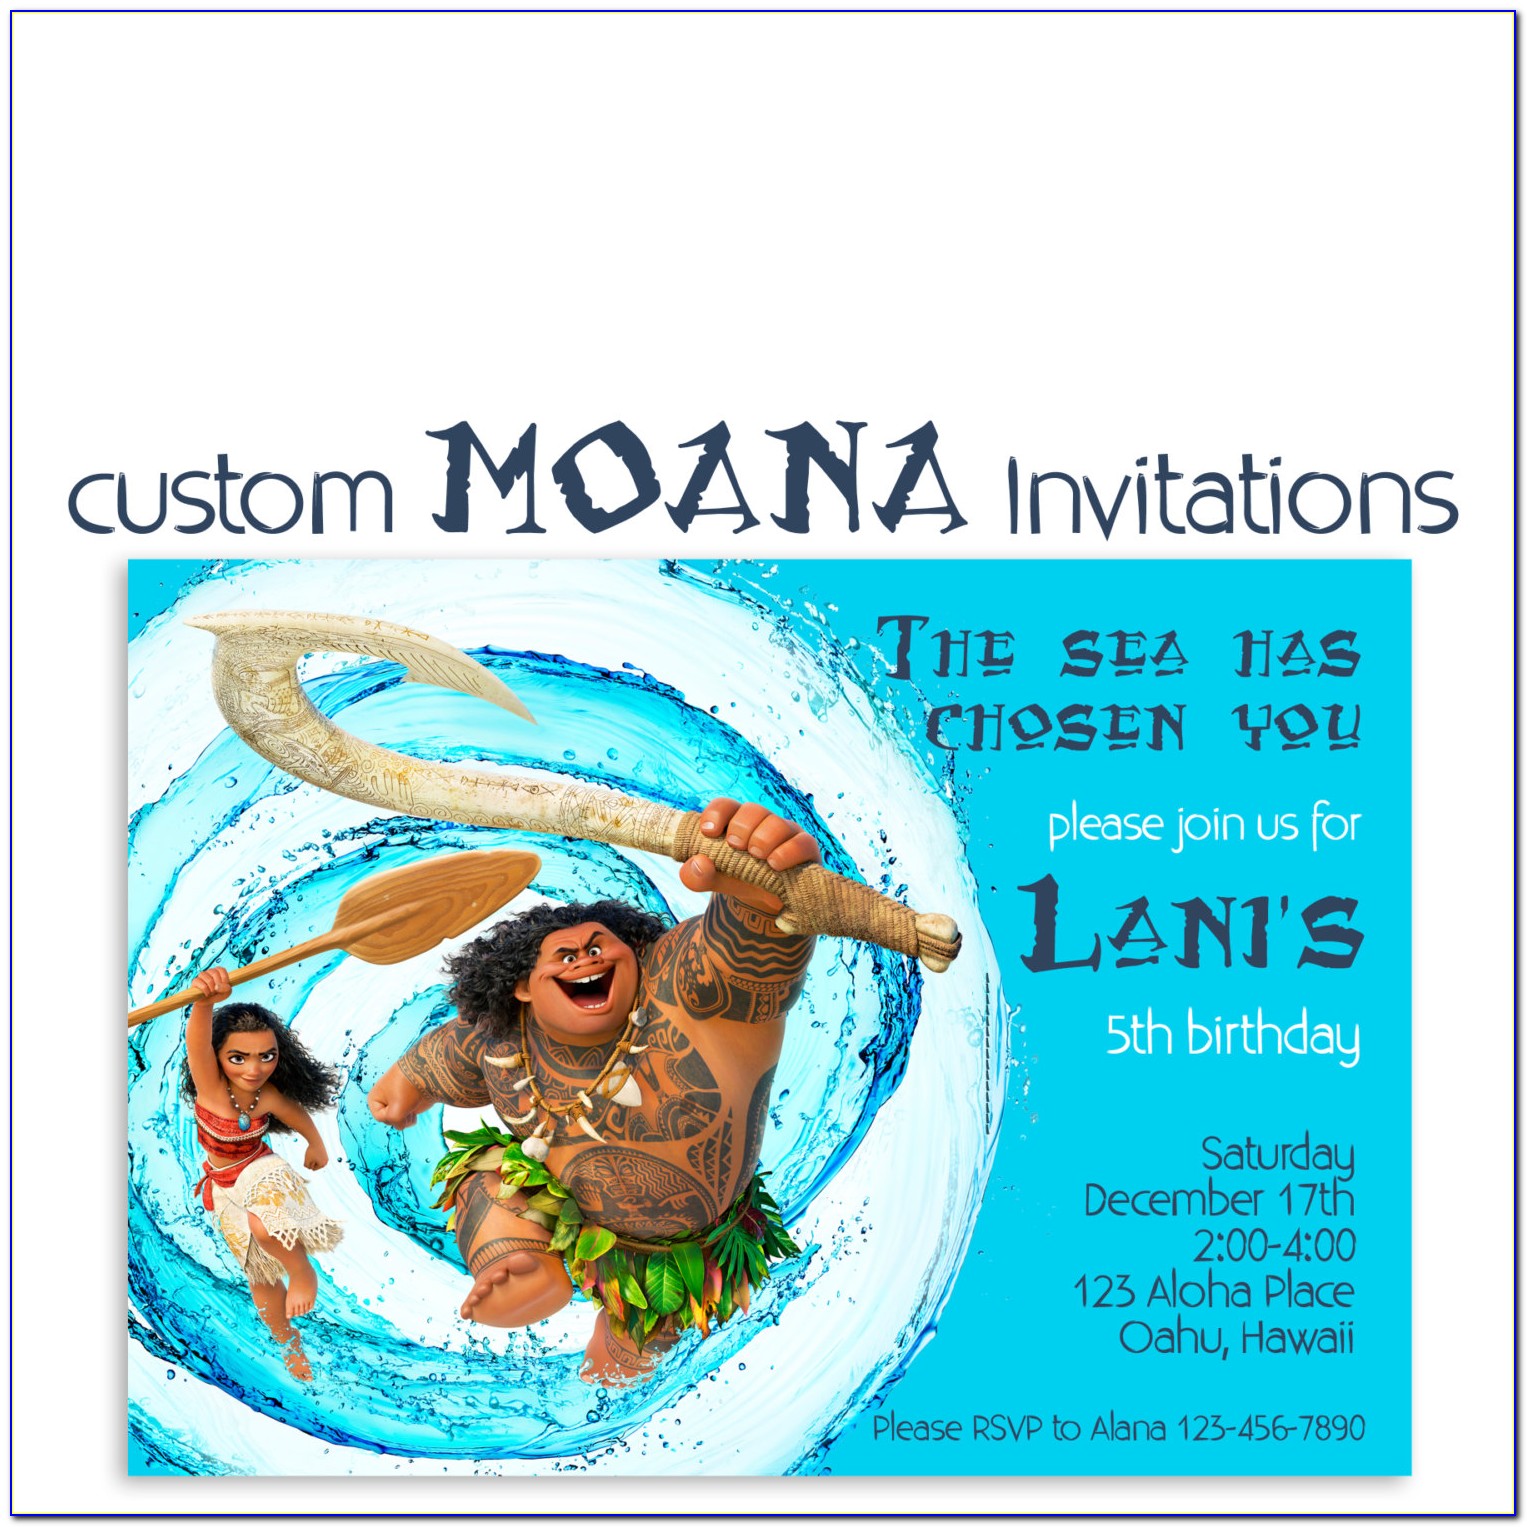 Custom Moana Invitations